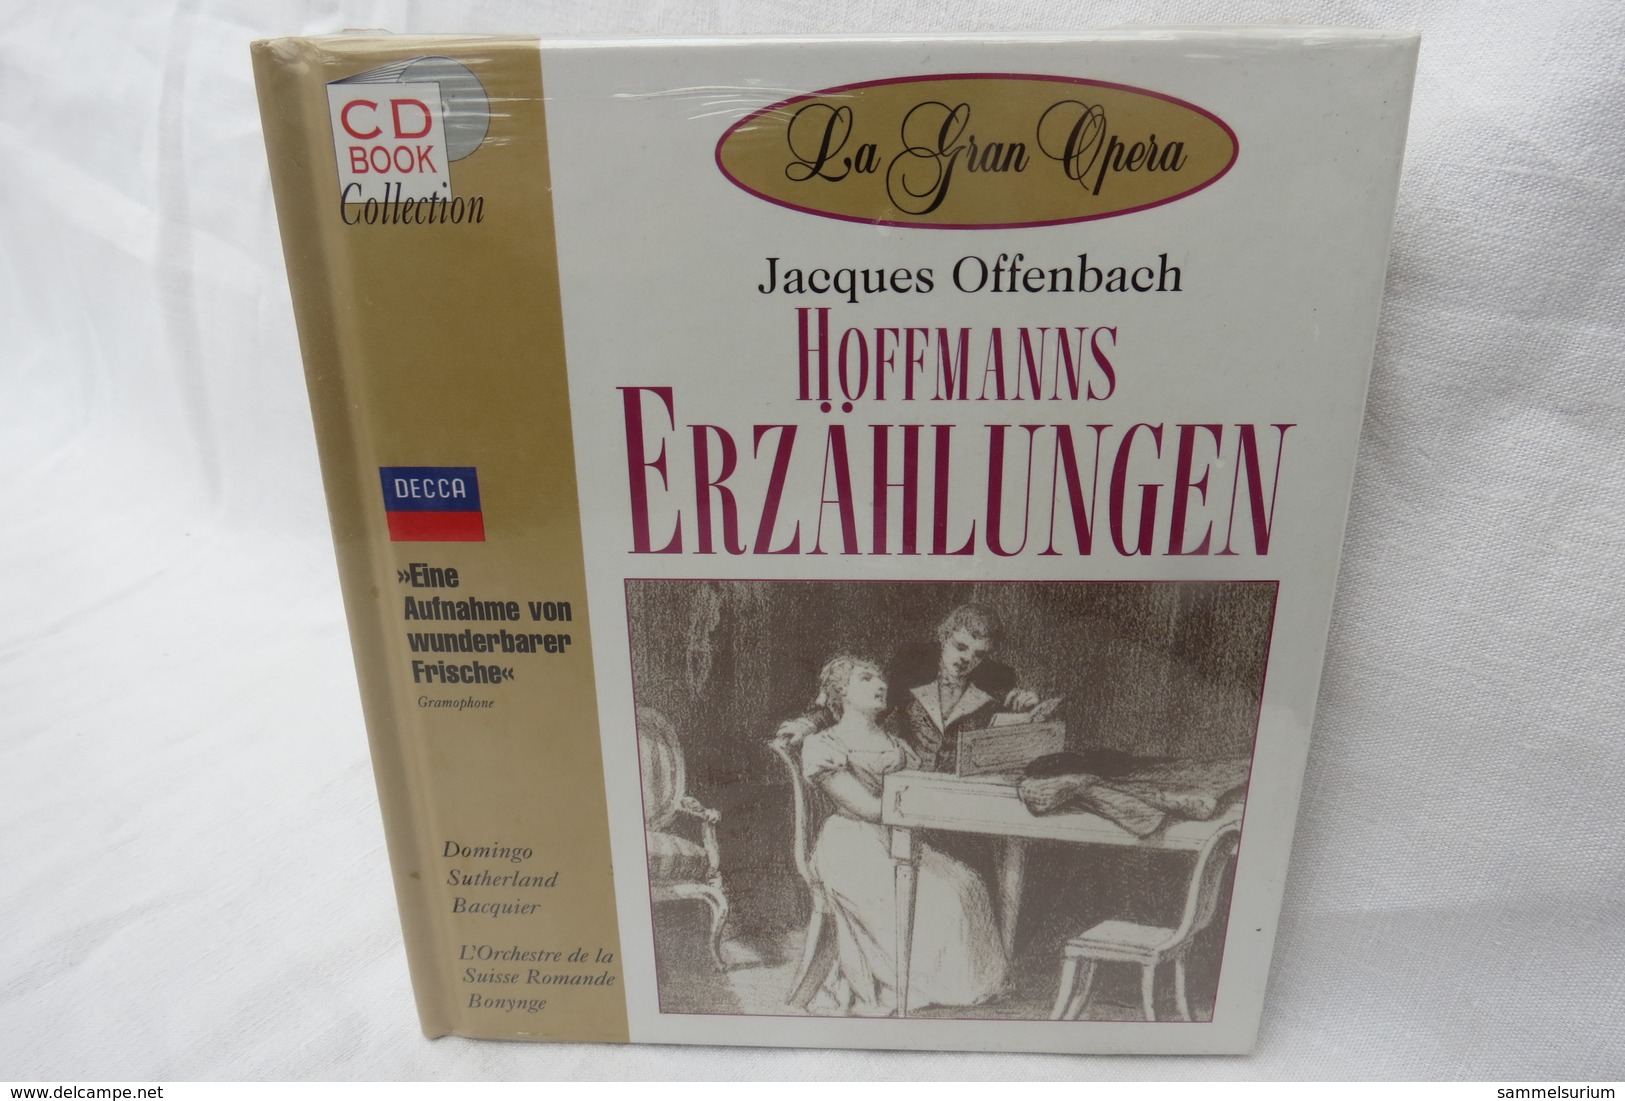 CD "Hoffmanns Erzählungen / Jacques Offenbach" Mit Buch Aus Der CD Book Collection (ungeöffnet, Original Eingeschweißt) - Opera